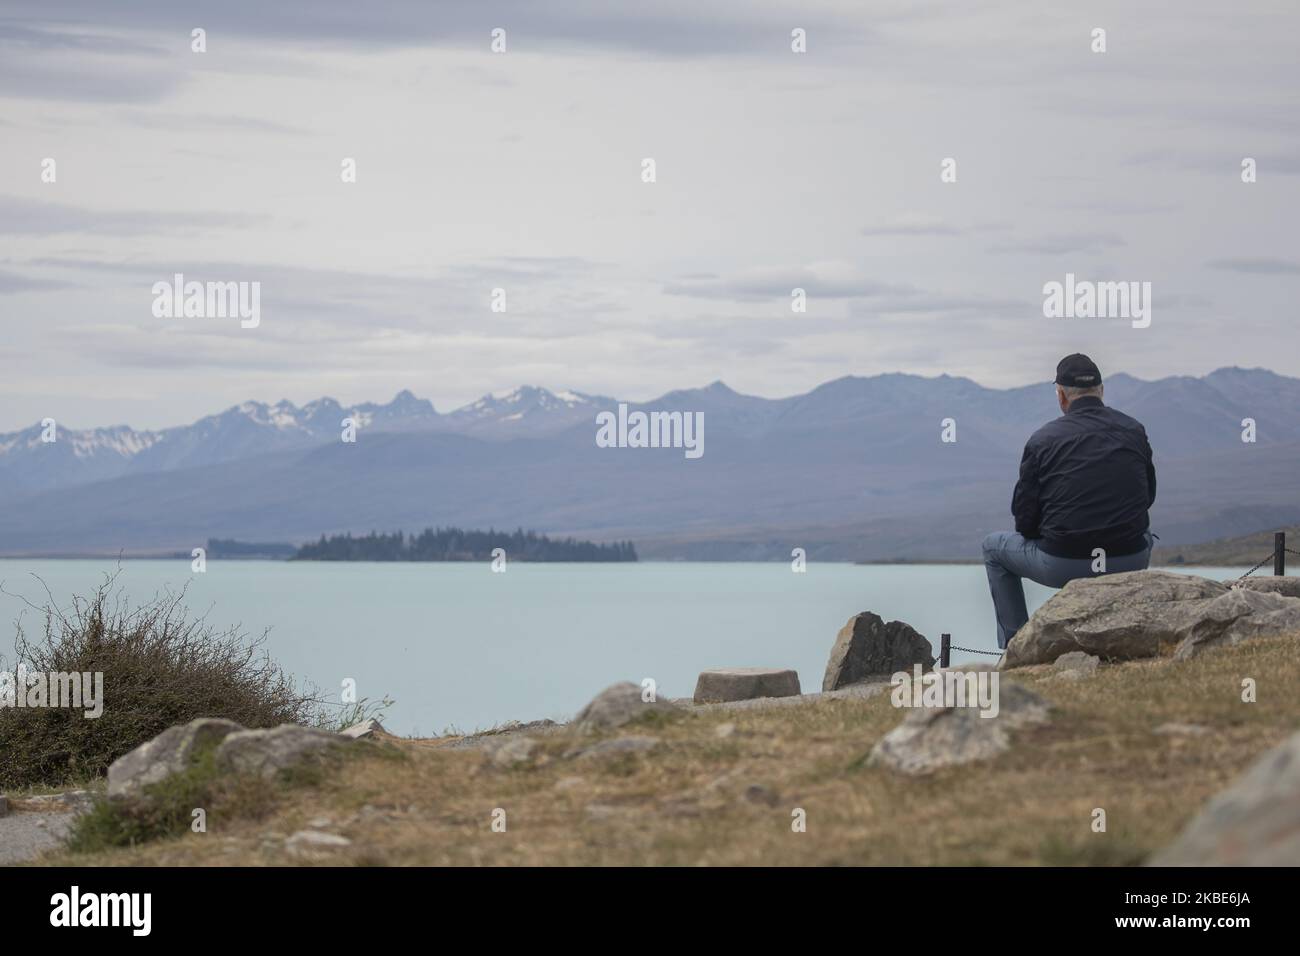 Am 10. Januar 2020 sitzt eine ältere Person und schaut auf den See TekapoÂ auf der zentralen Südinsel von New ZealandÂ.Â Tekapo ist eine der beliebtesten Touristenattraktionen Neuseelands.Â Â (Foto: Sanka Vidanagama/NurPhoto) Stockfoto